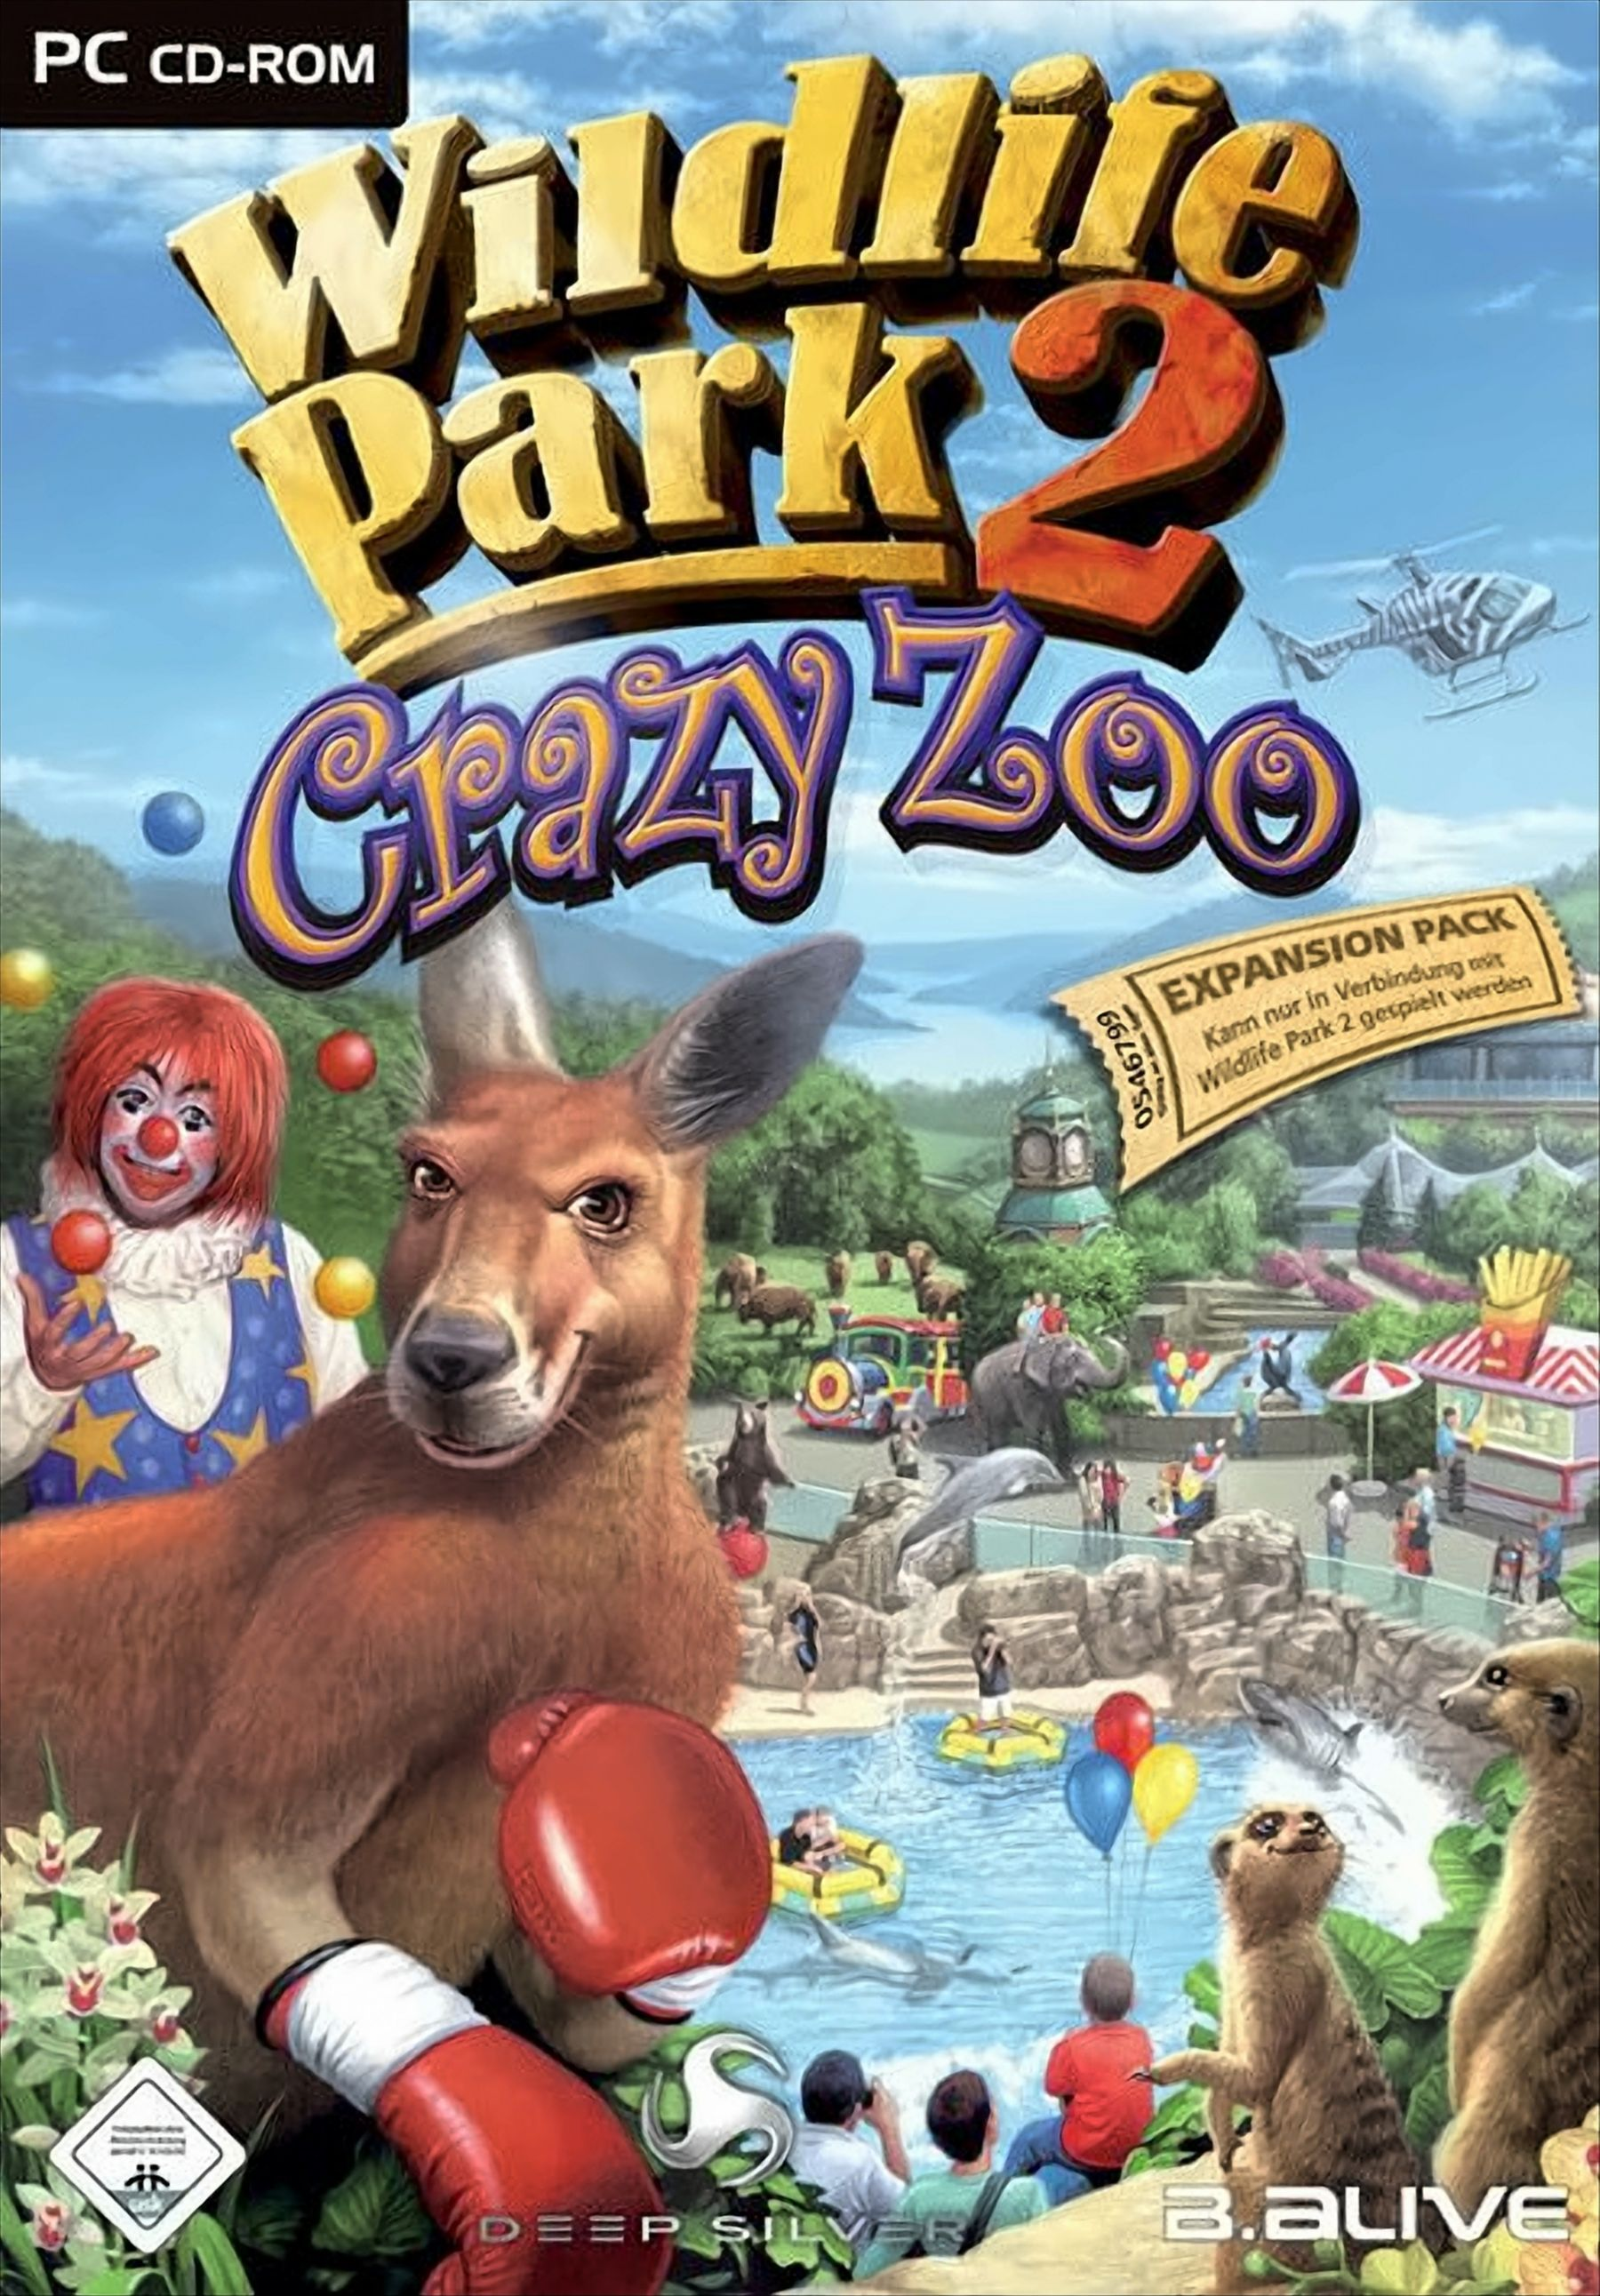 2: [PC] - Zoo Wildlife Park Crazy